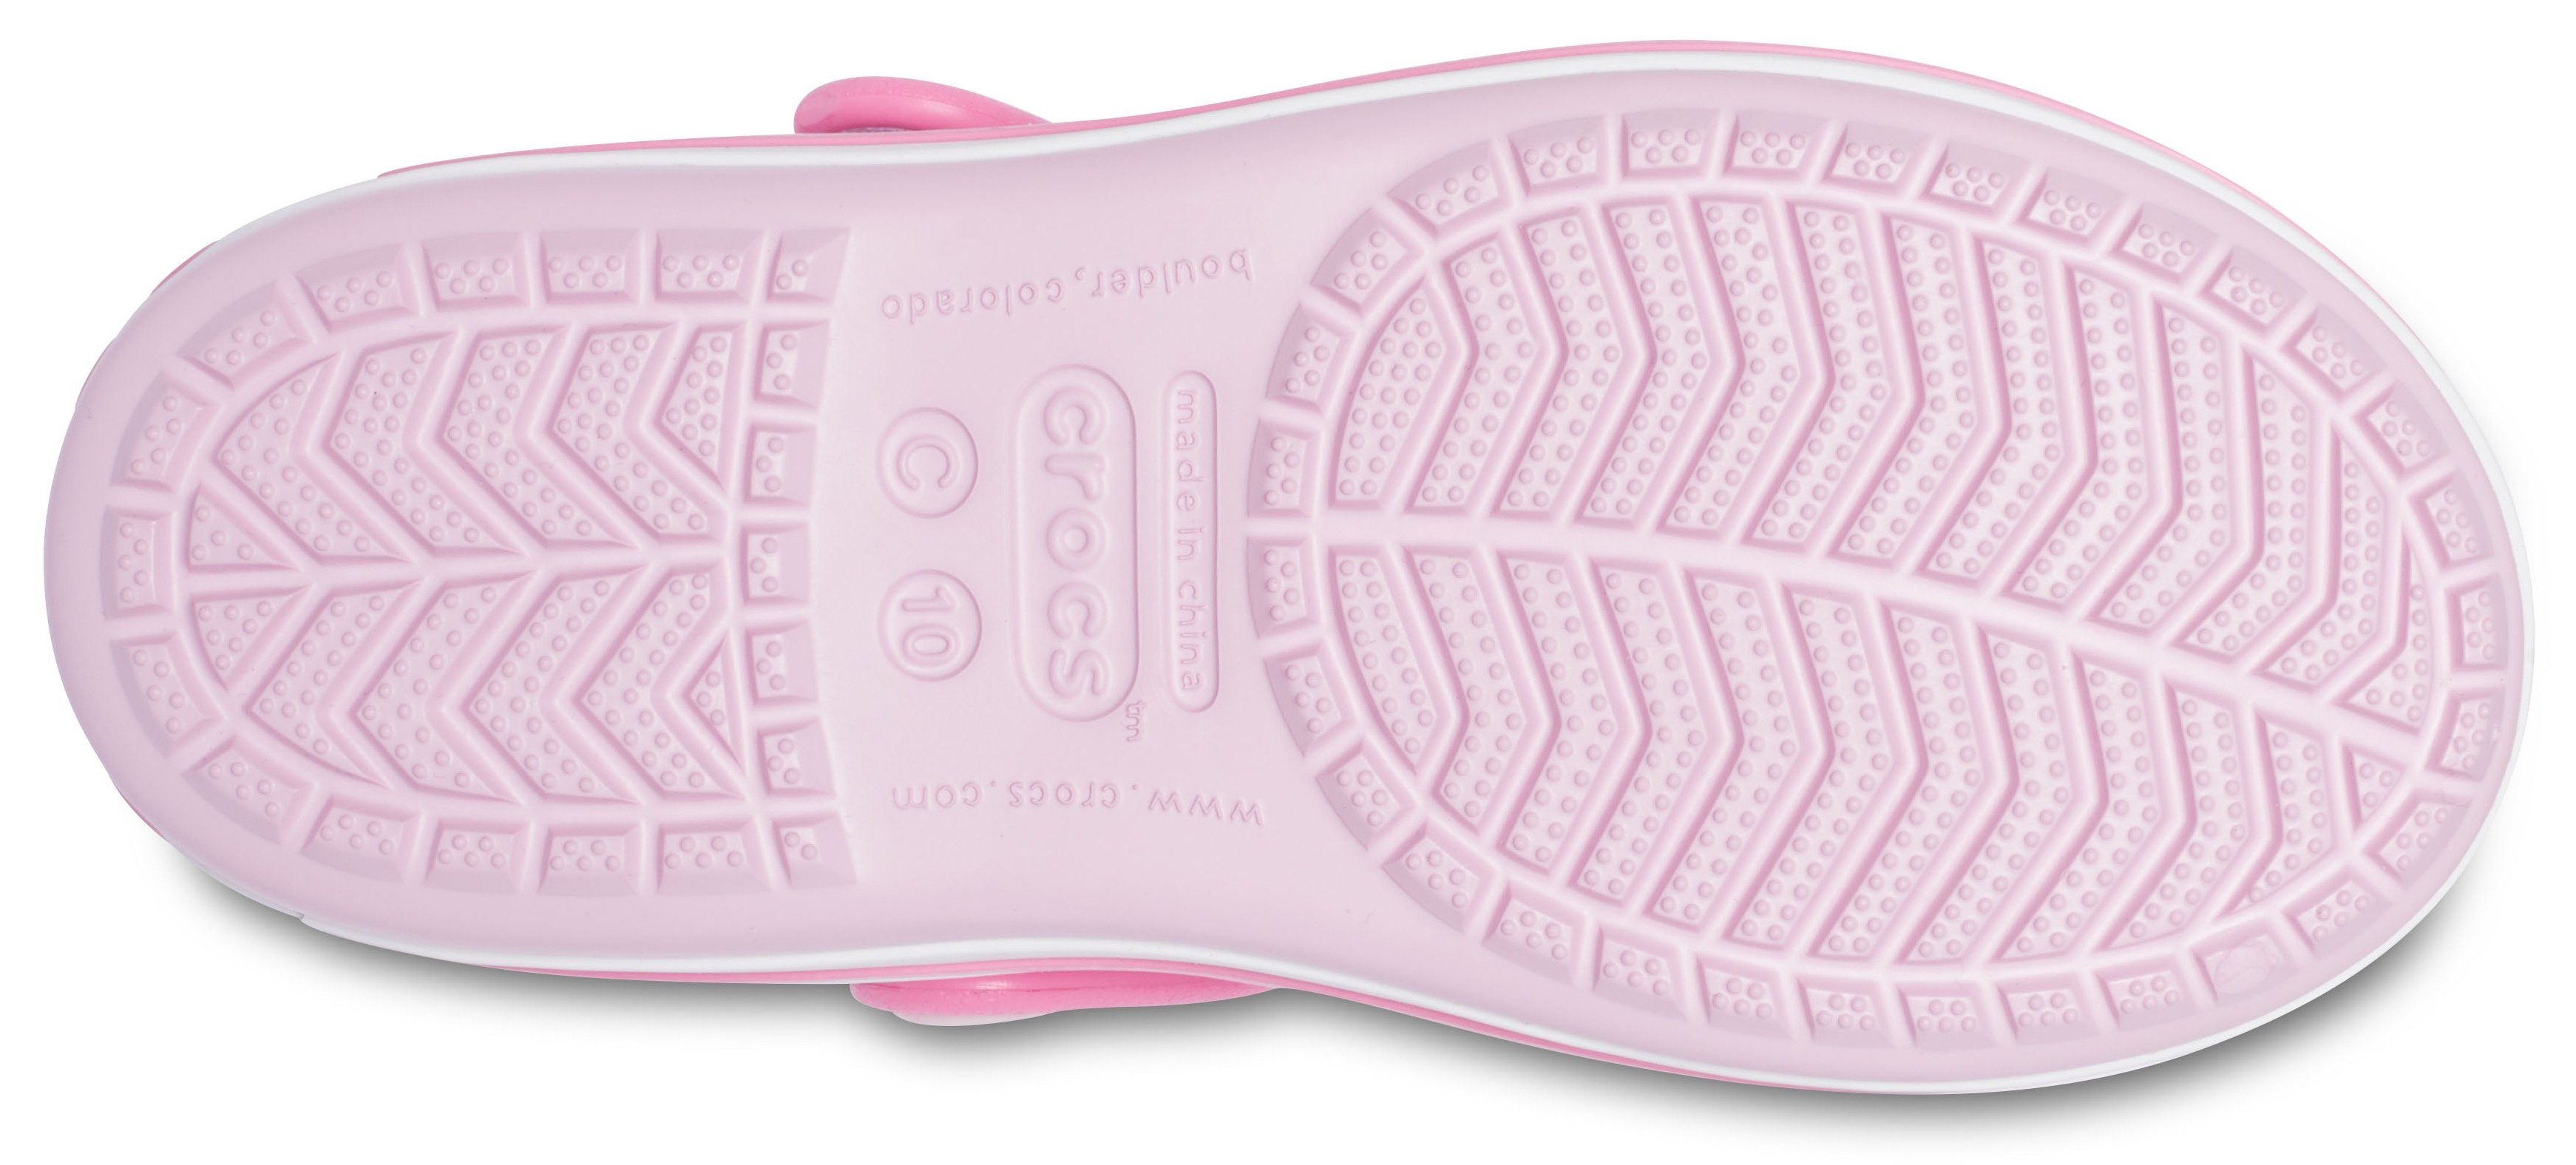 rosa-pink praktischem Klettverschluss Crocs Crocband mit Badesandale